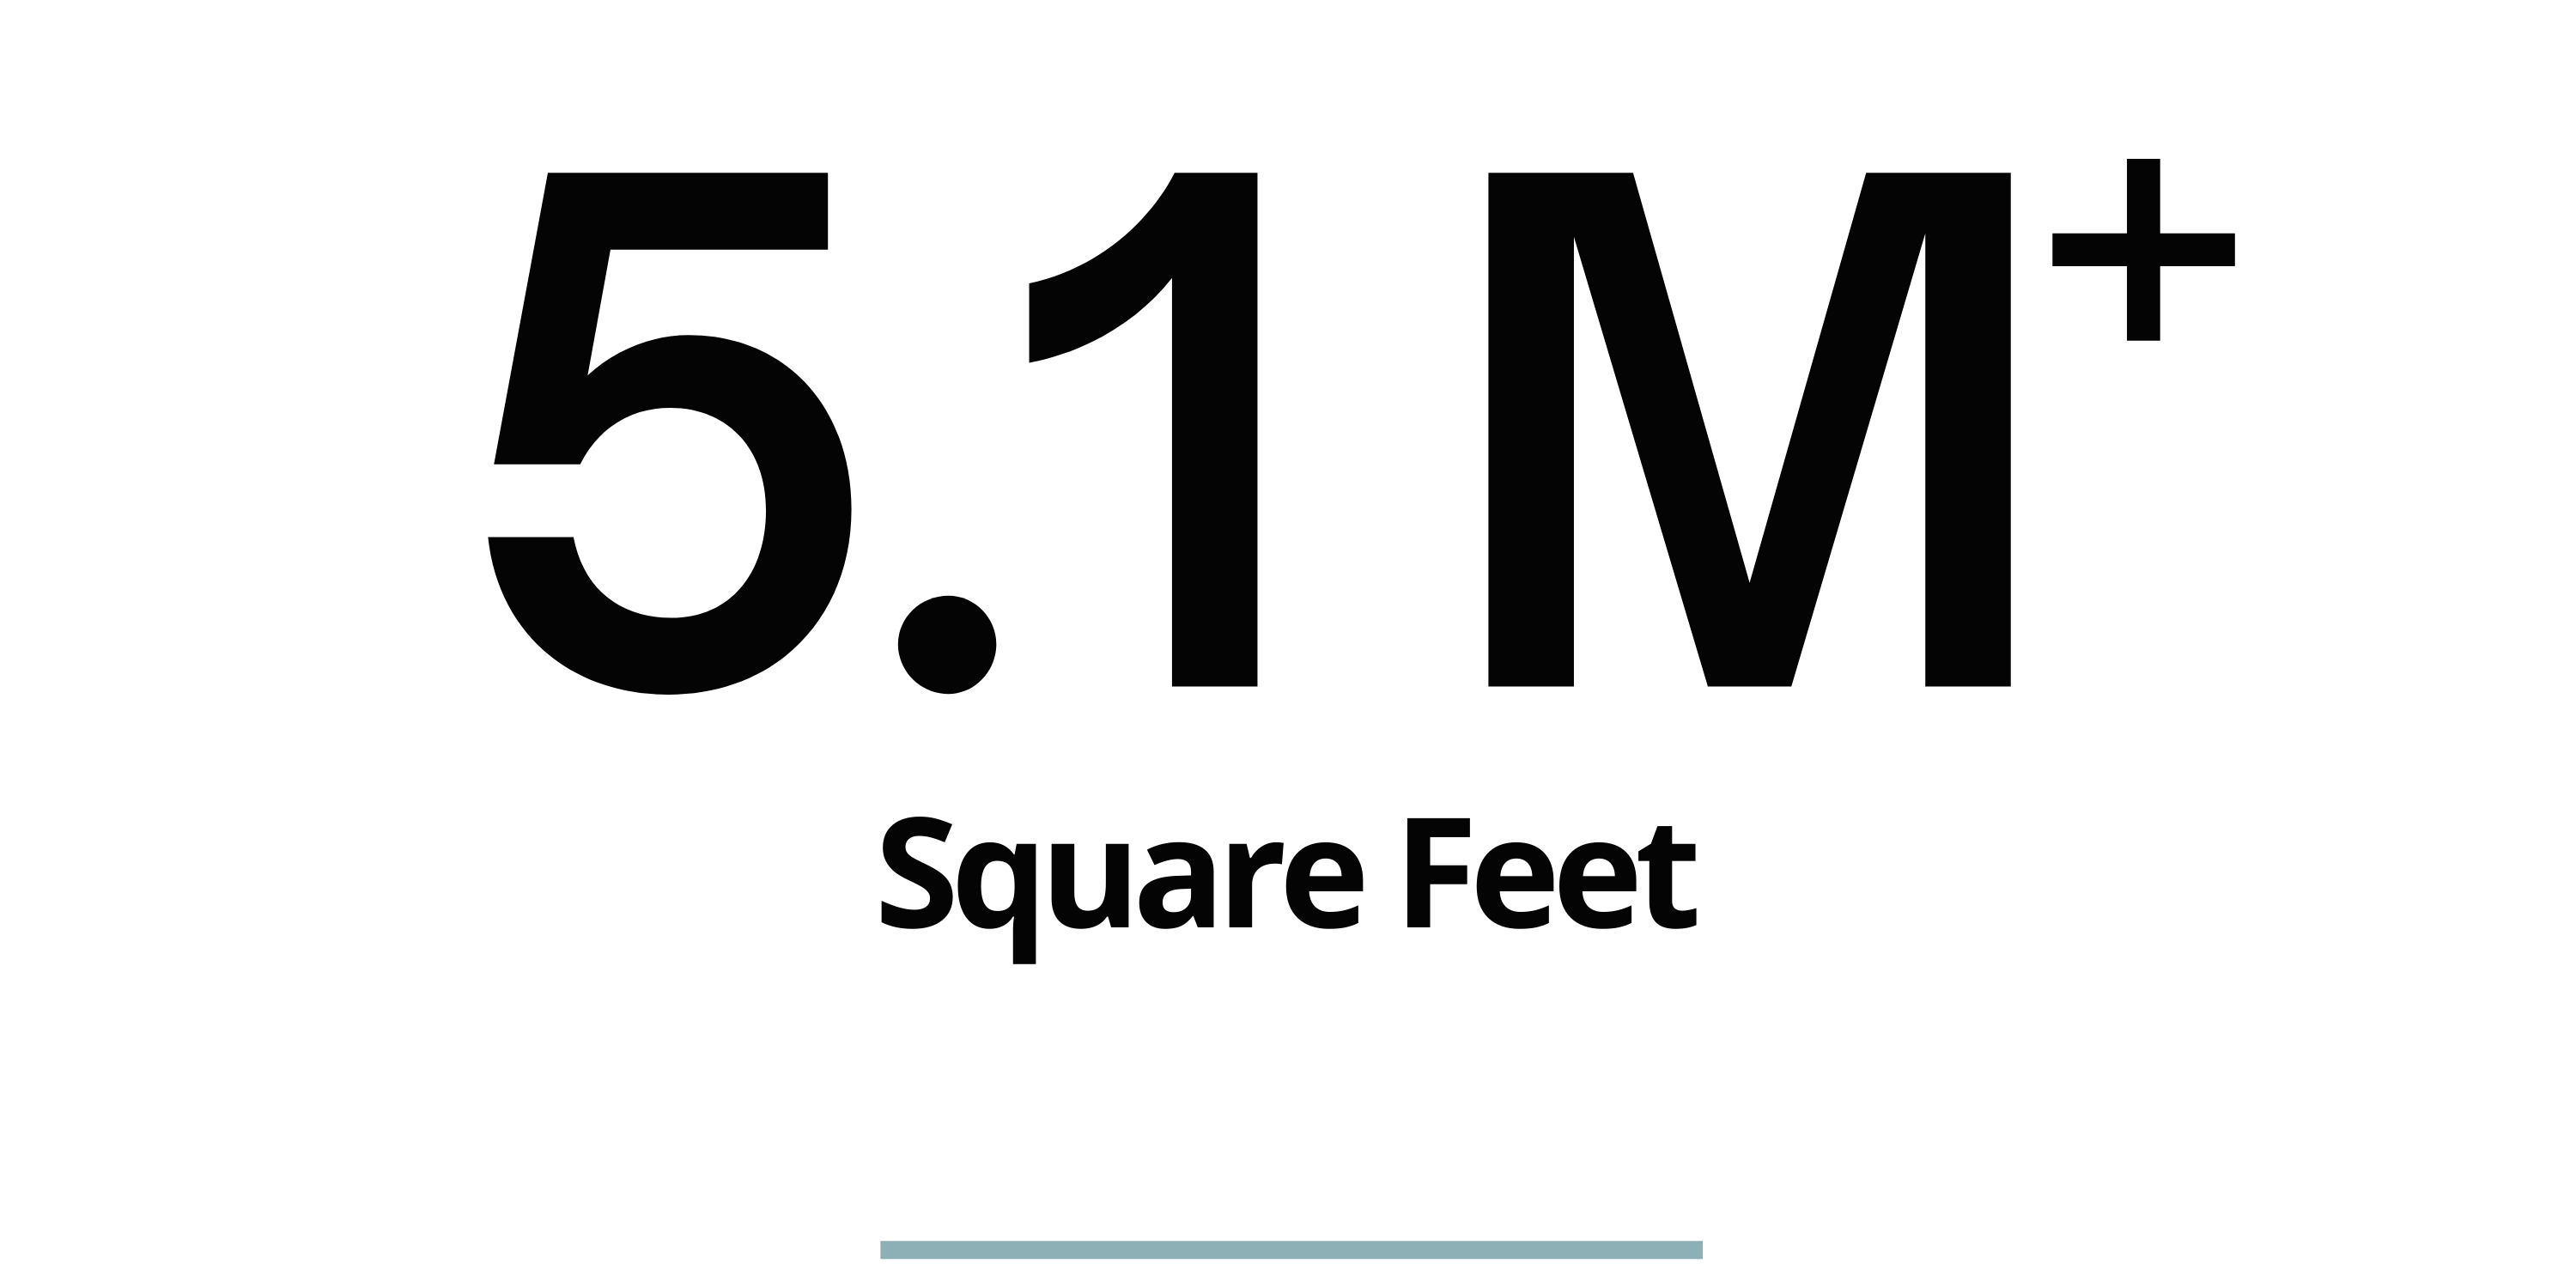 5.1 Million Plus Square Feet